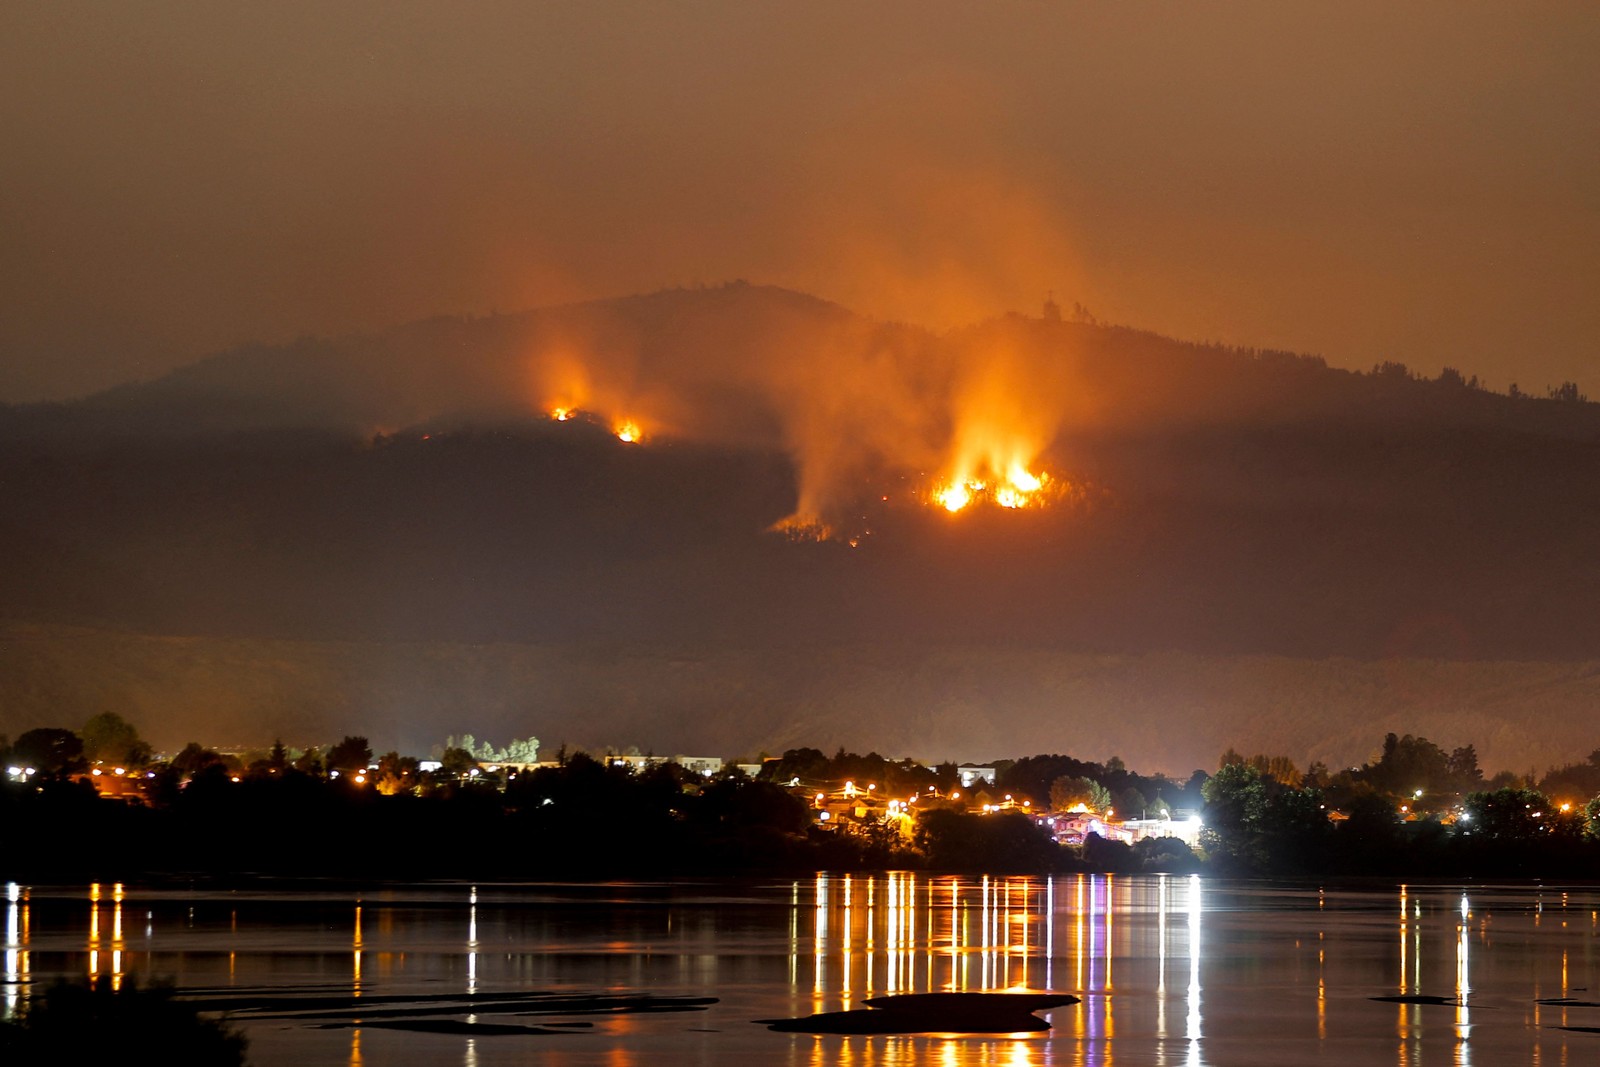 Estado de catástrofe. Incêndio florestal se aproxima da cidade de Chiguayante, província de Concepción, no Chile — Foto: JAVIER TORRES/AFP